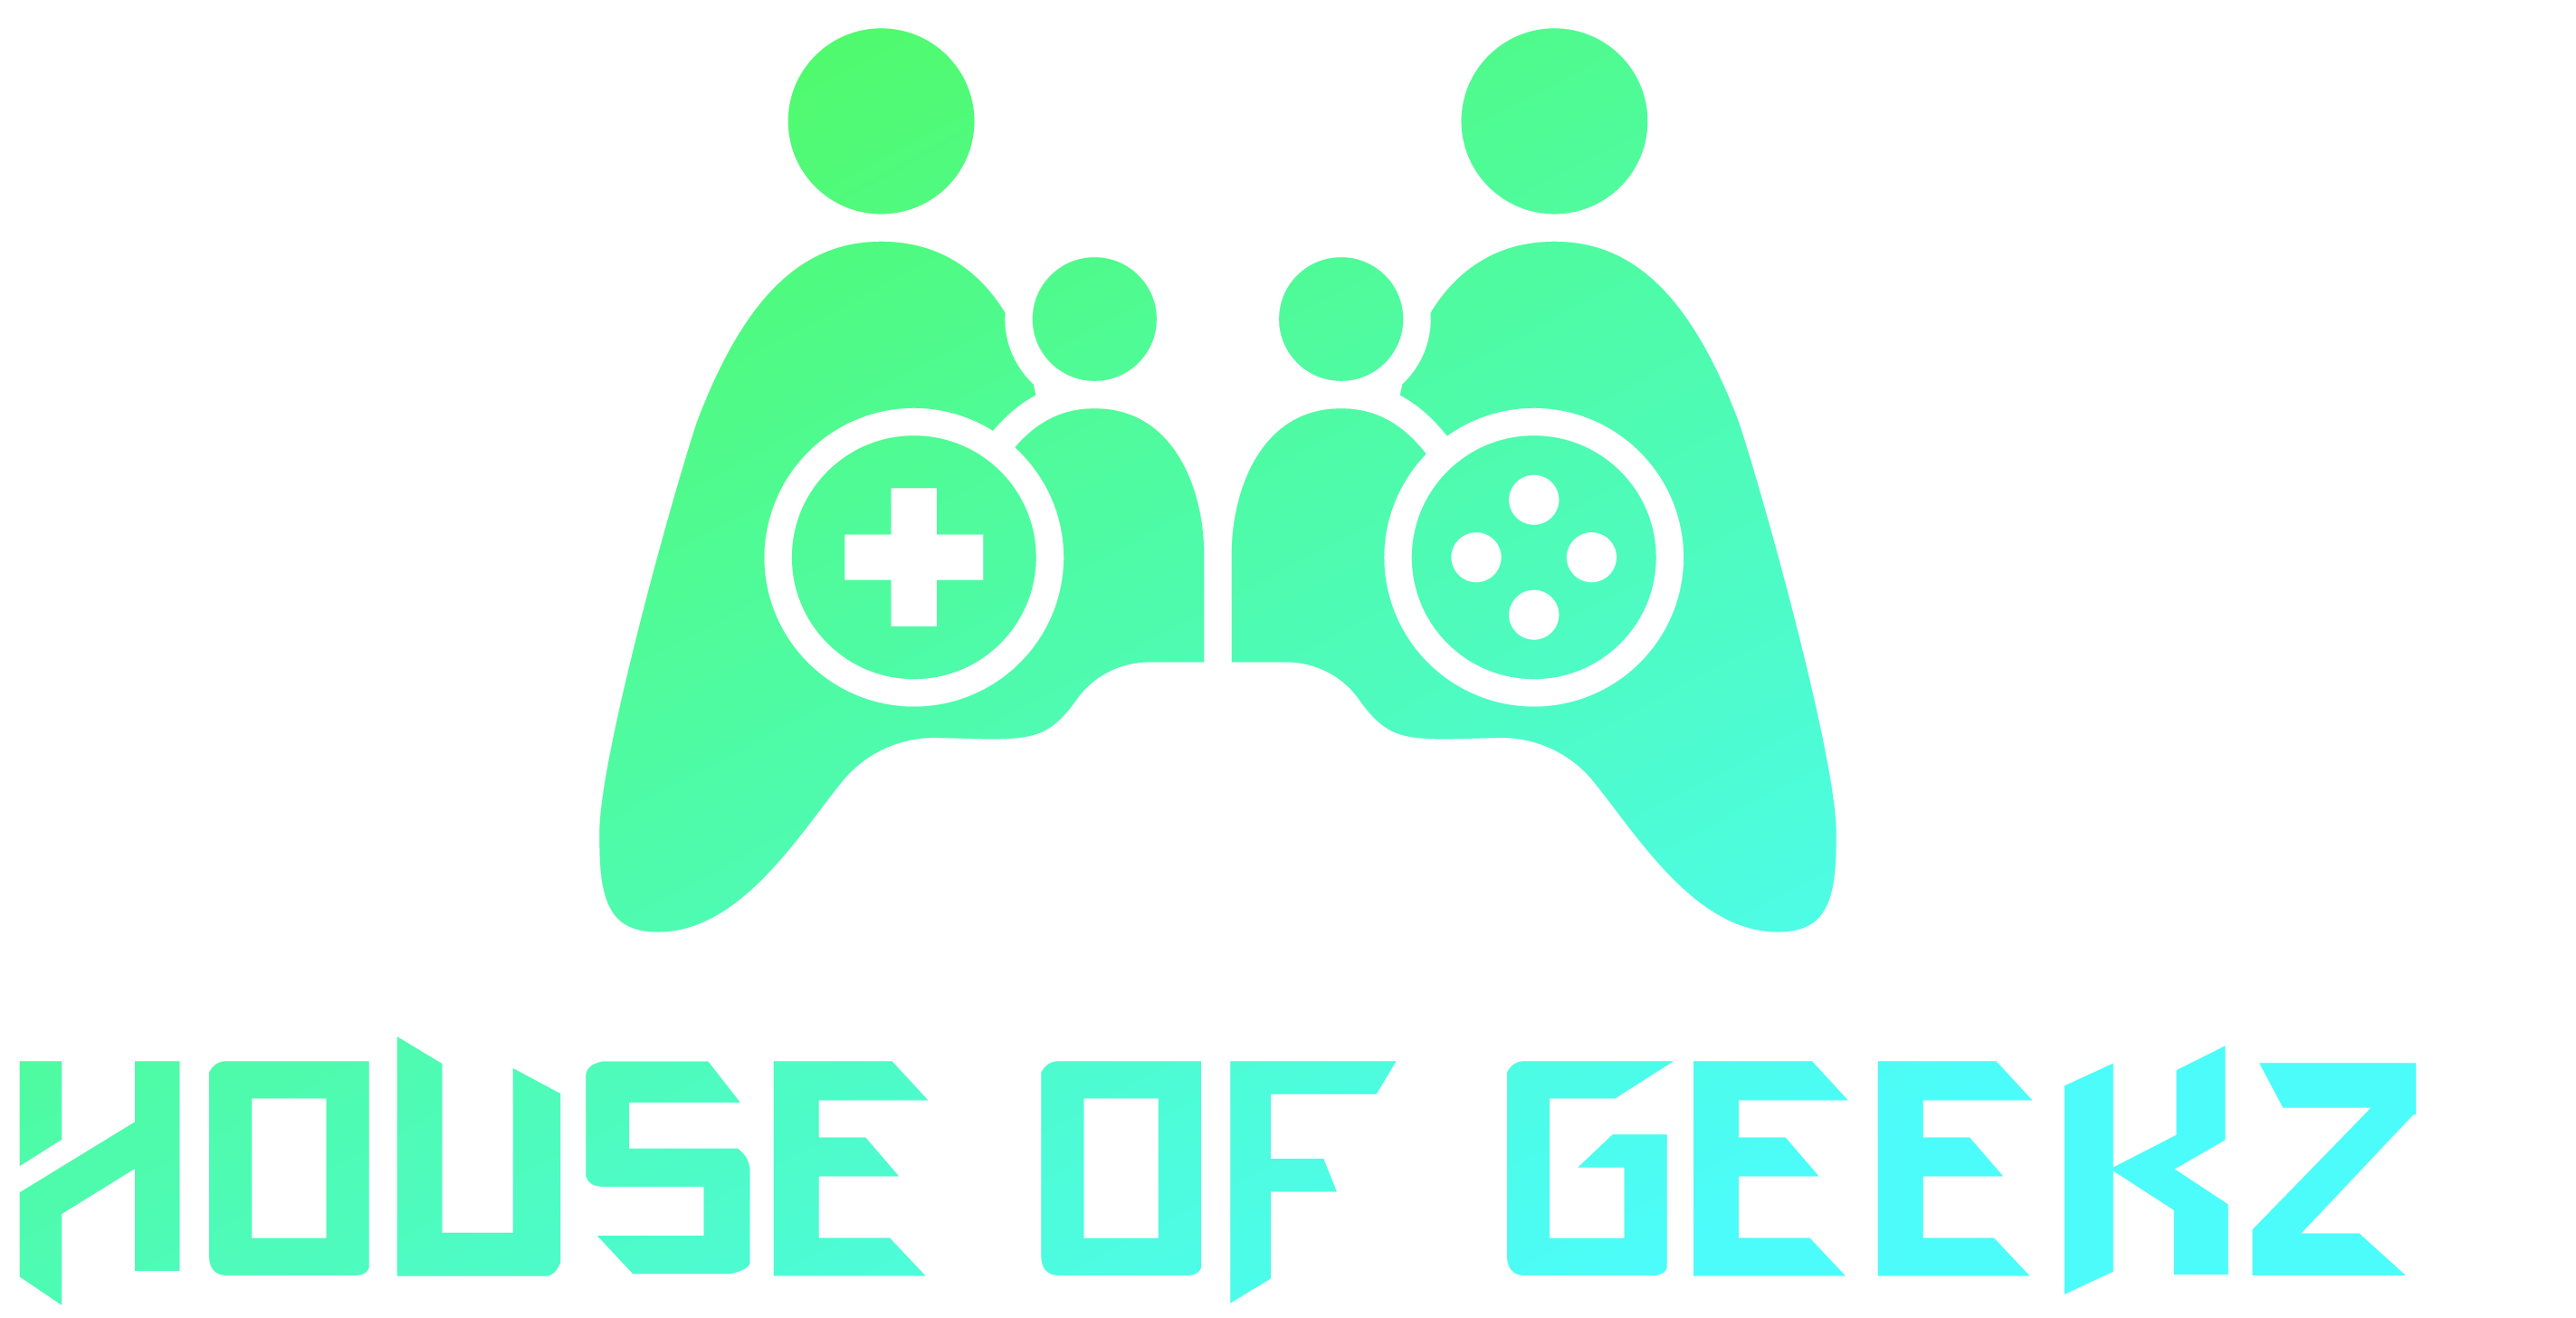 –==House Of Geekz==–